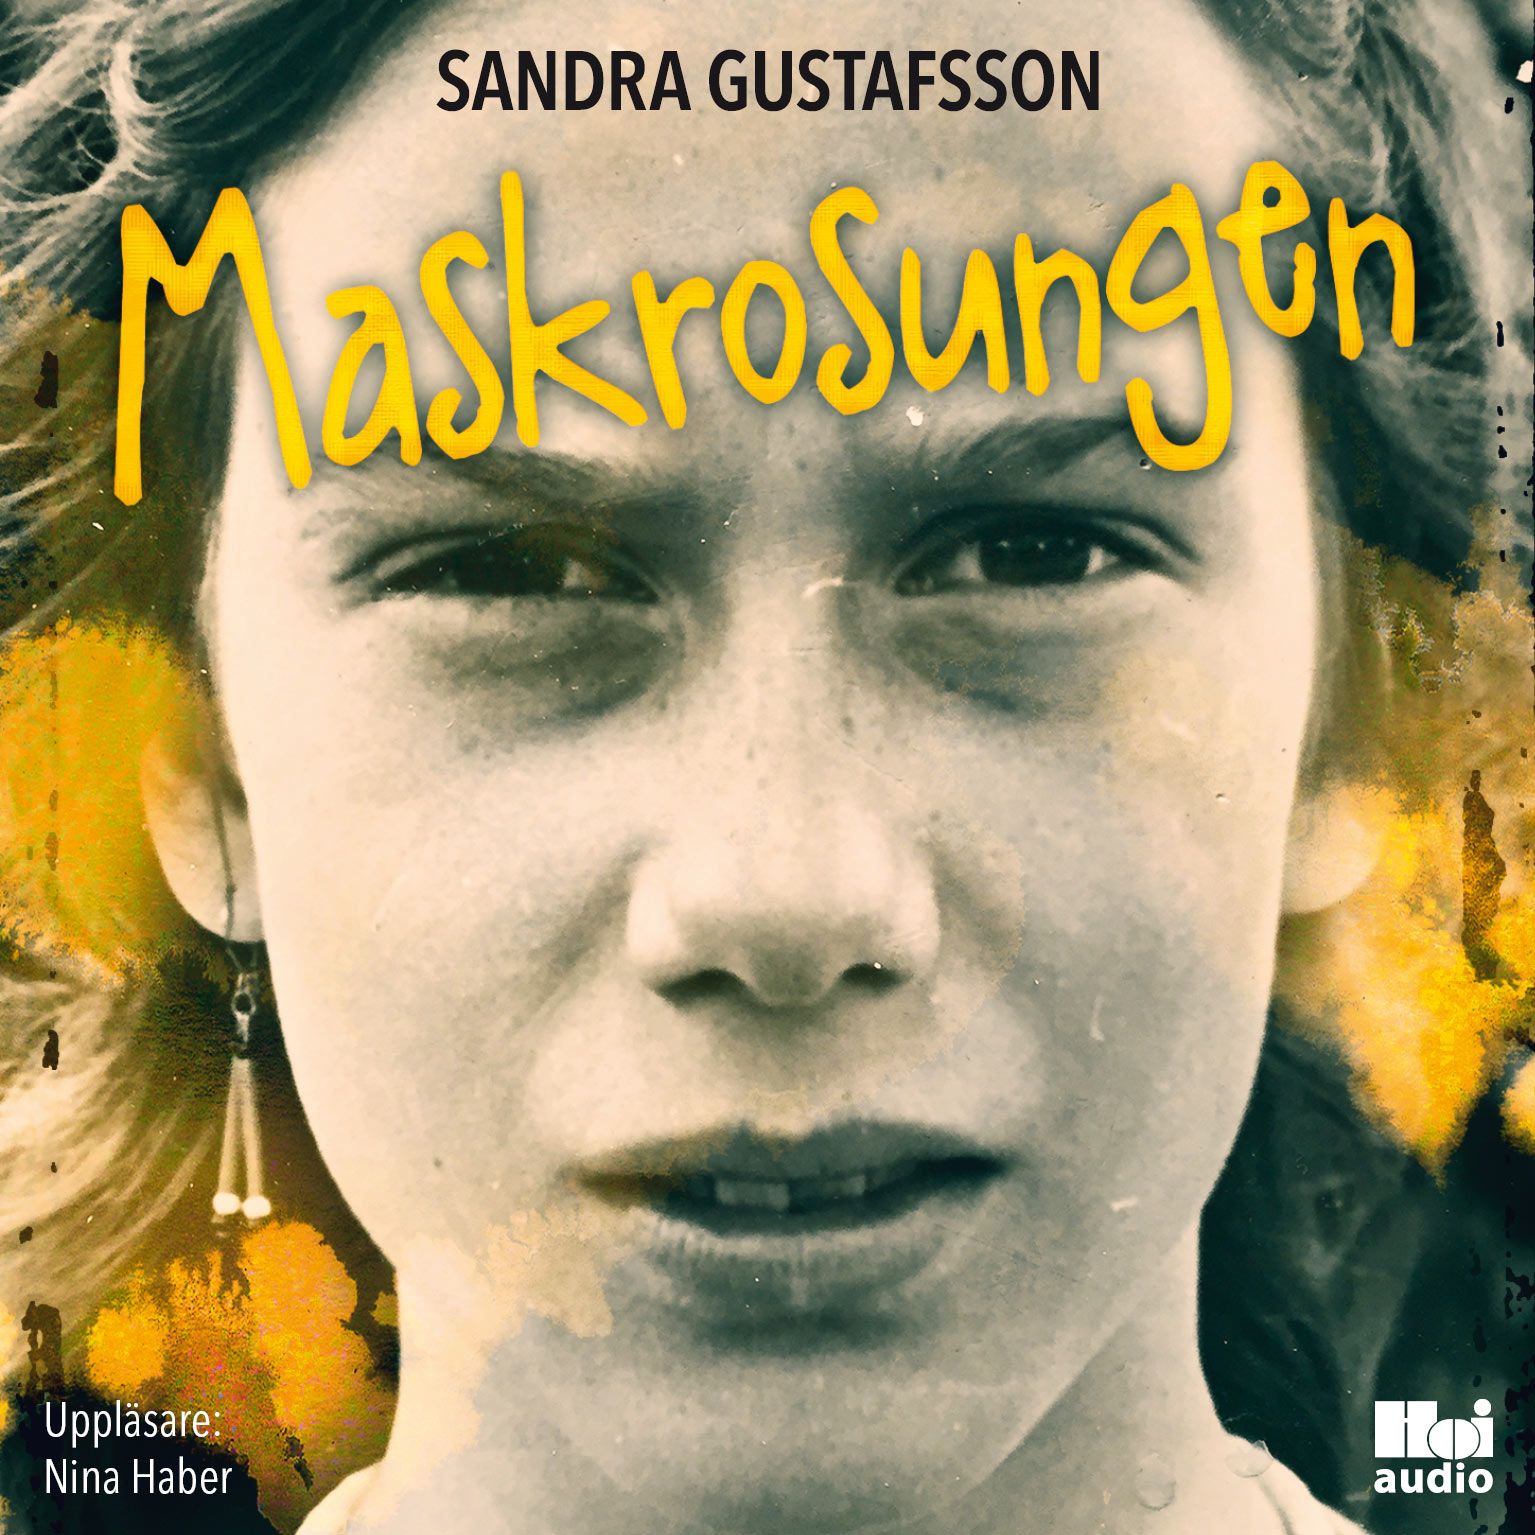 Maskrosungen, lydbog af Sandra Gustafsson